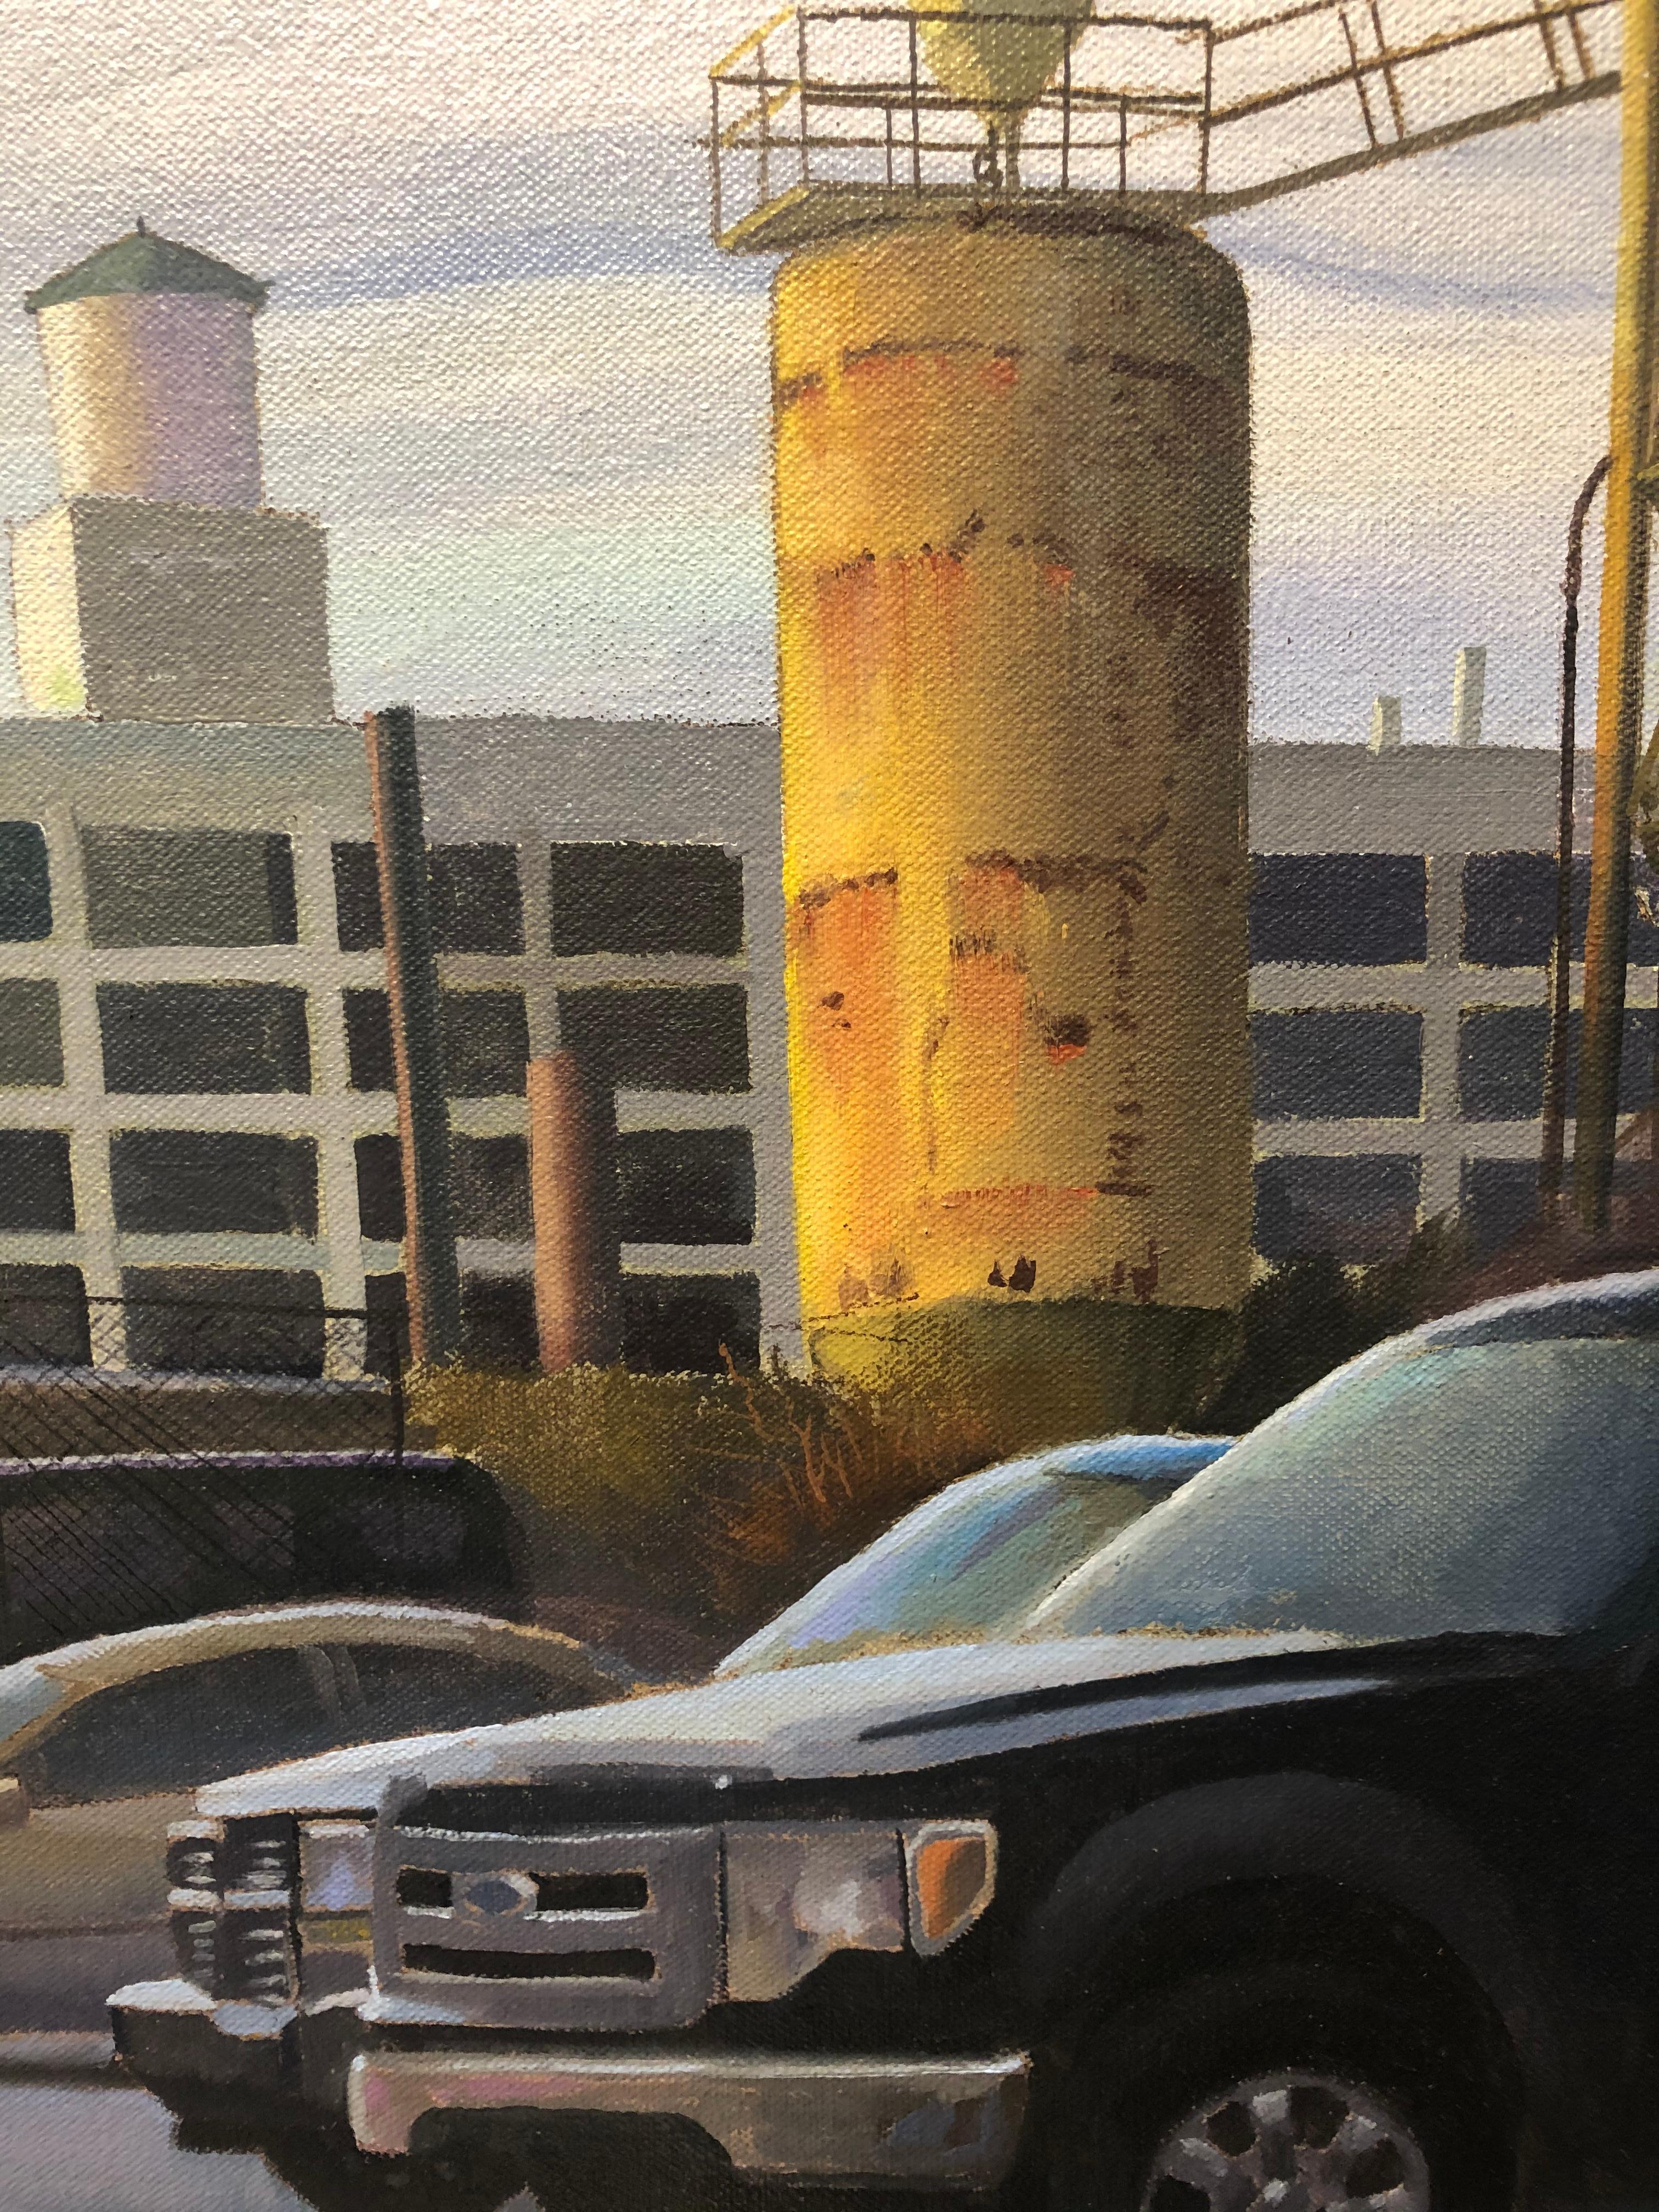 Doppelter Overtime-Shift, urbane Industrielandschaft, zeitgenössische realistische Malerei – Painting von Art Chartow